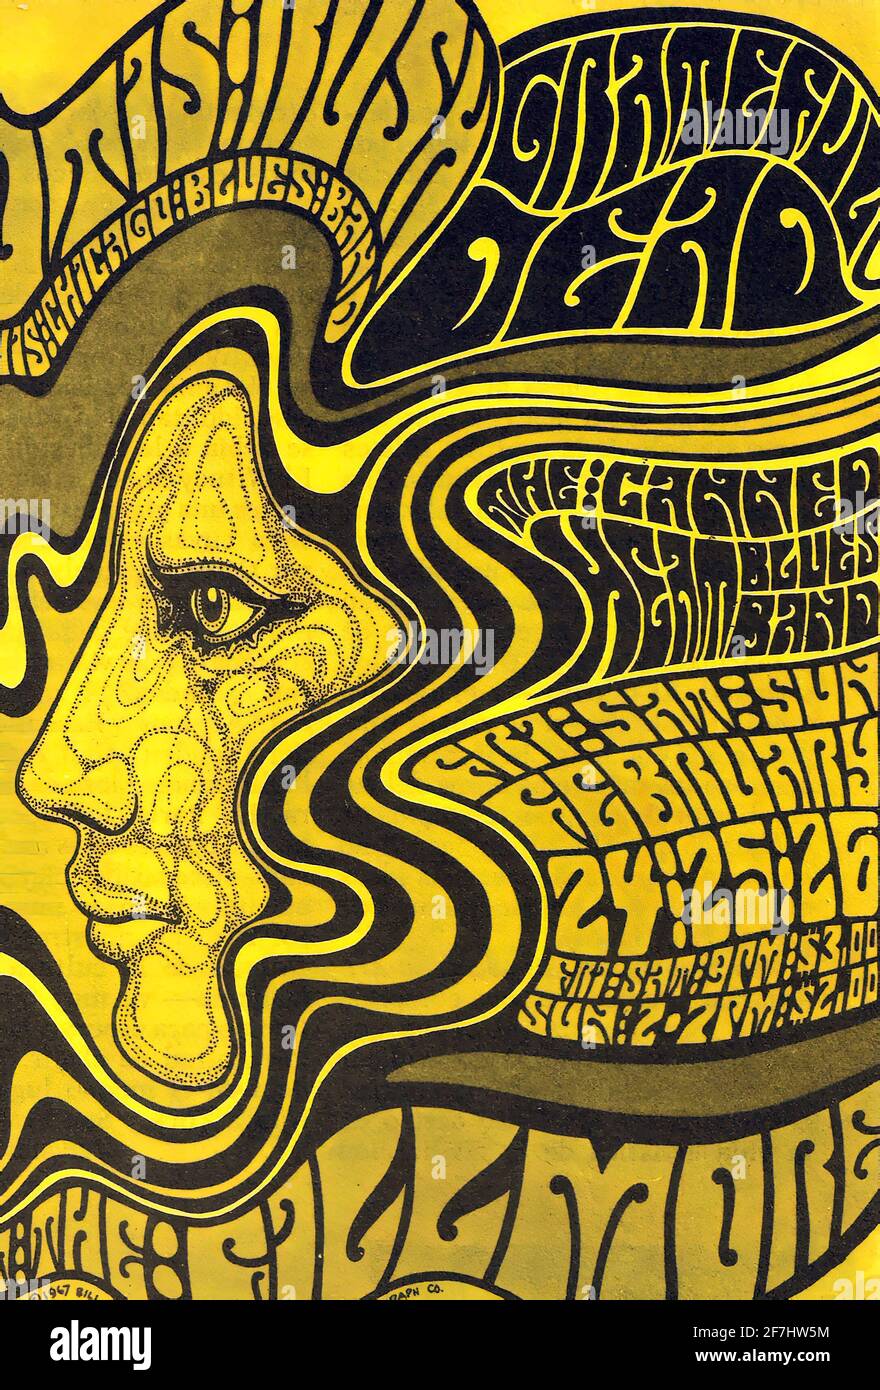 Une affiche de musique psychédélique vintage pour un concert de Degradful Dead Banque D'Images